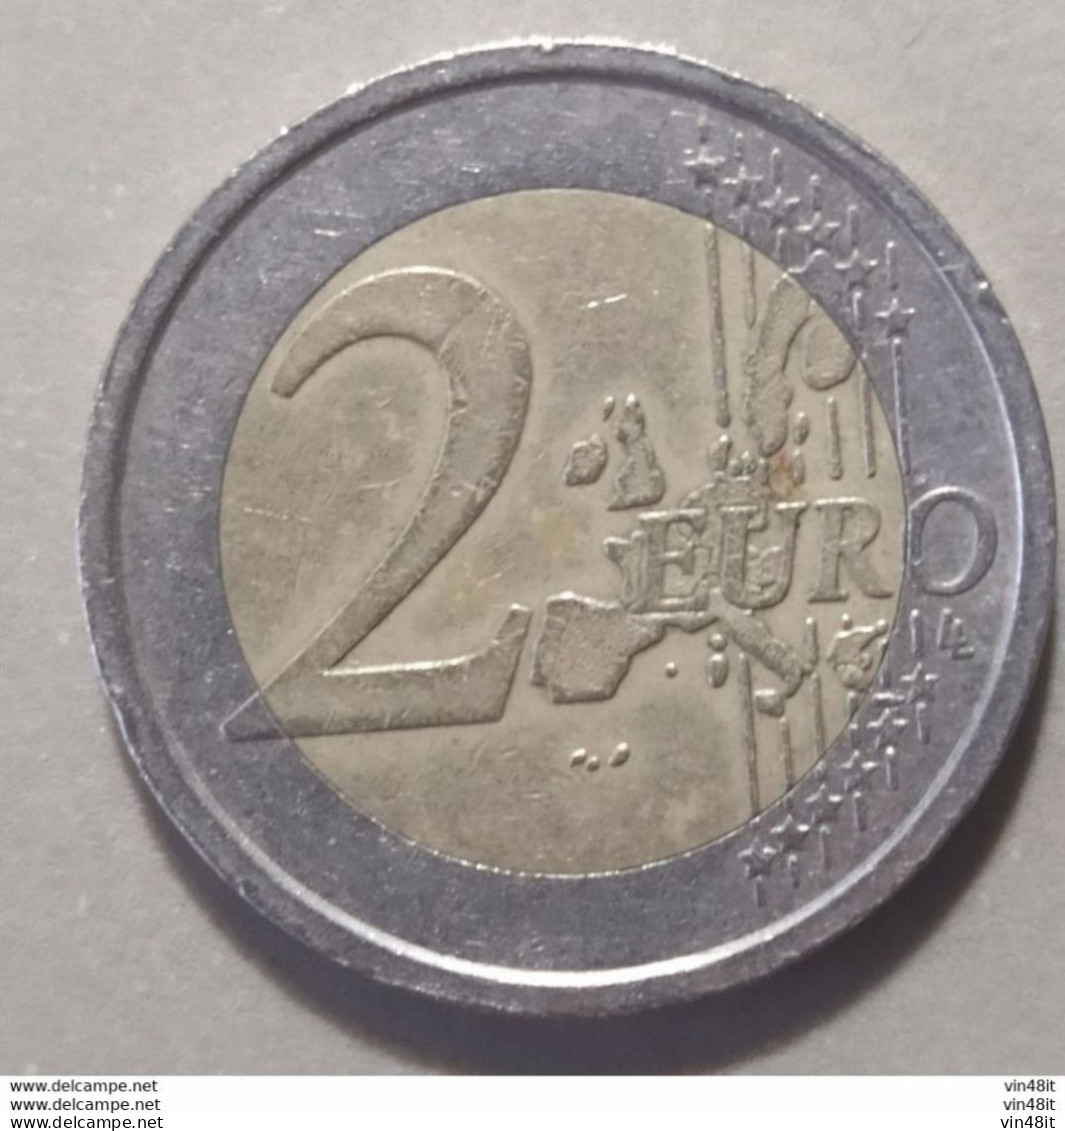 2012 - AUSTRIA  - MONETA IN EURO  - COMMEMORATIVA  - DEL VALORE DI  2,00  EURO  -  USATA - Autriche